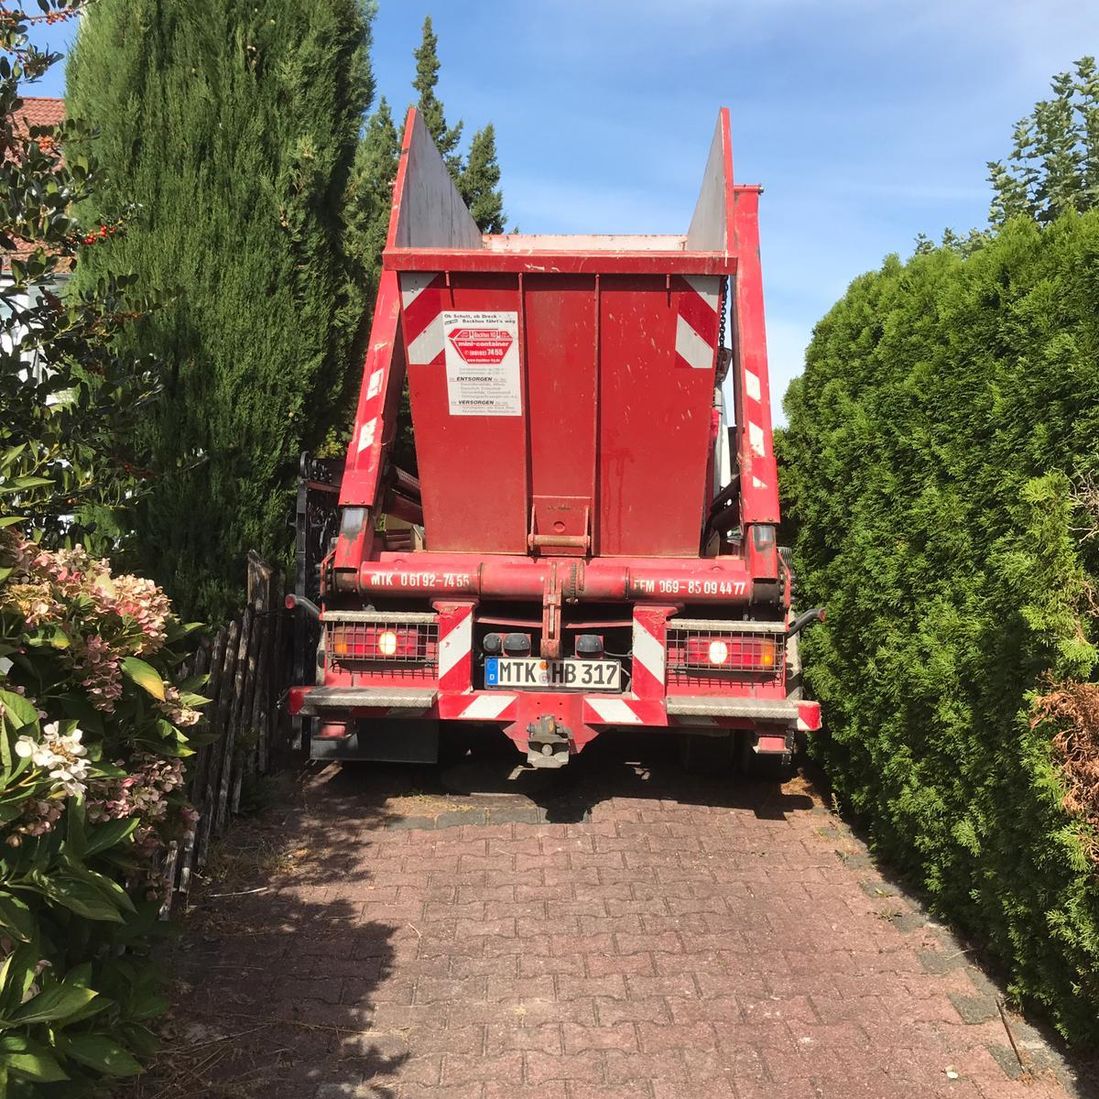 LKW, beladen mit rotem Container der Firma Backhus, fährt durch eine enge Gasse.